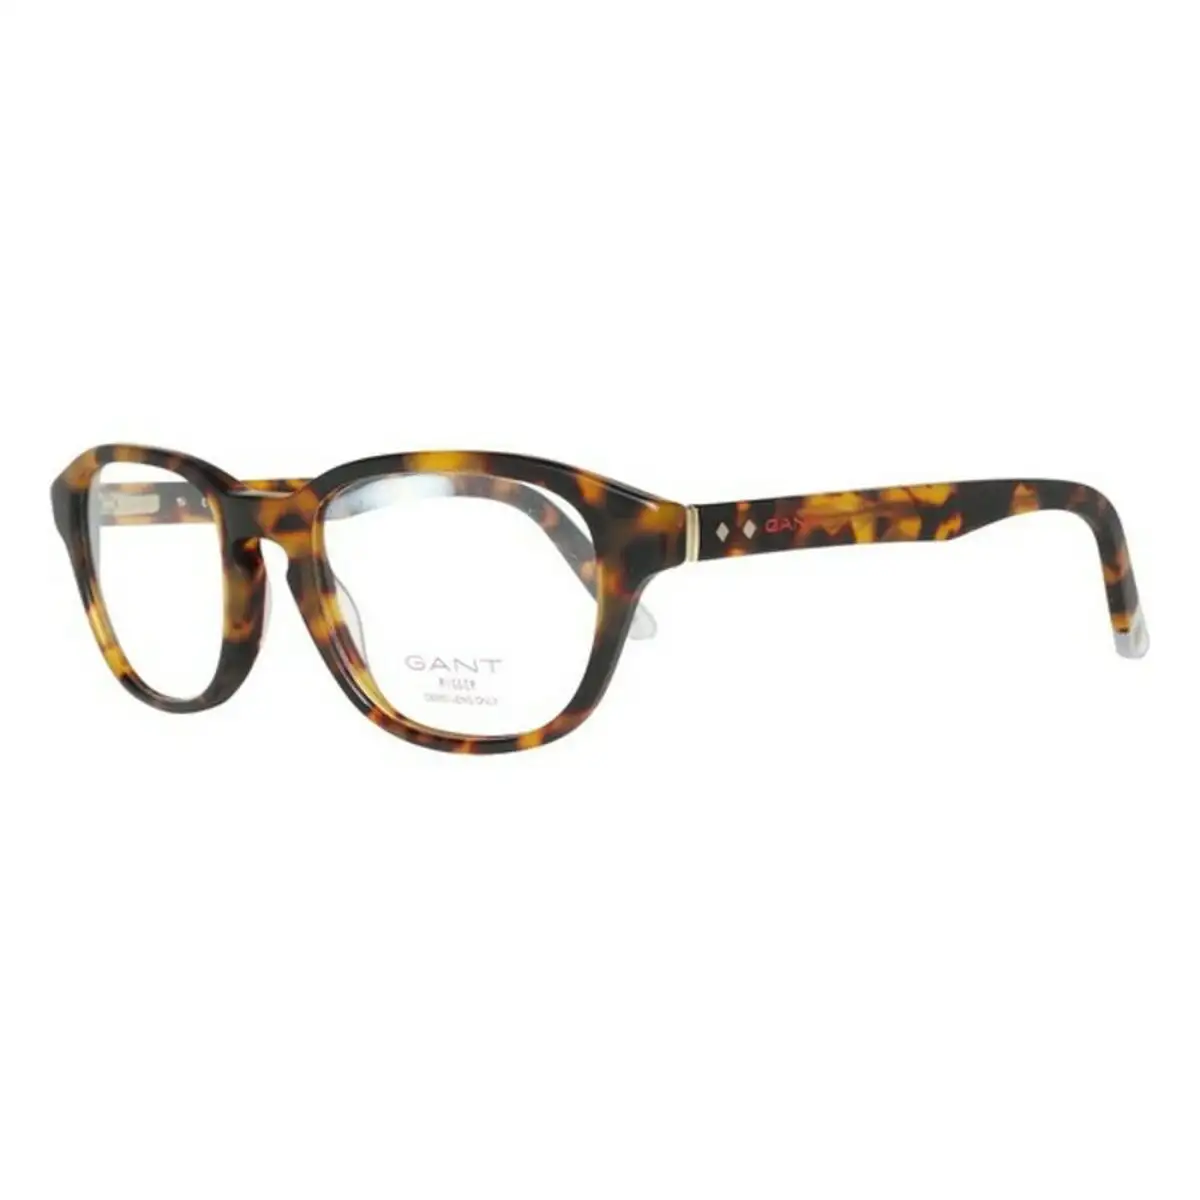 Monture de lunettes homme gant gr 5006 mto 49 o 49 mm marron o 49 mm _3239. DIAYTAR SENEGAL - Votre Source de Découvertes Shopping. Découvrez des trésors dans notre boutique en ligne, allant des articles artisanaux aux innovations modernes.